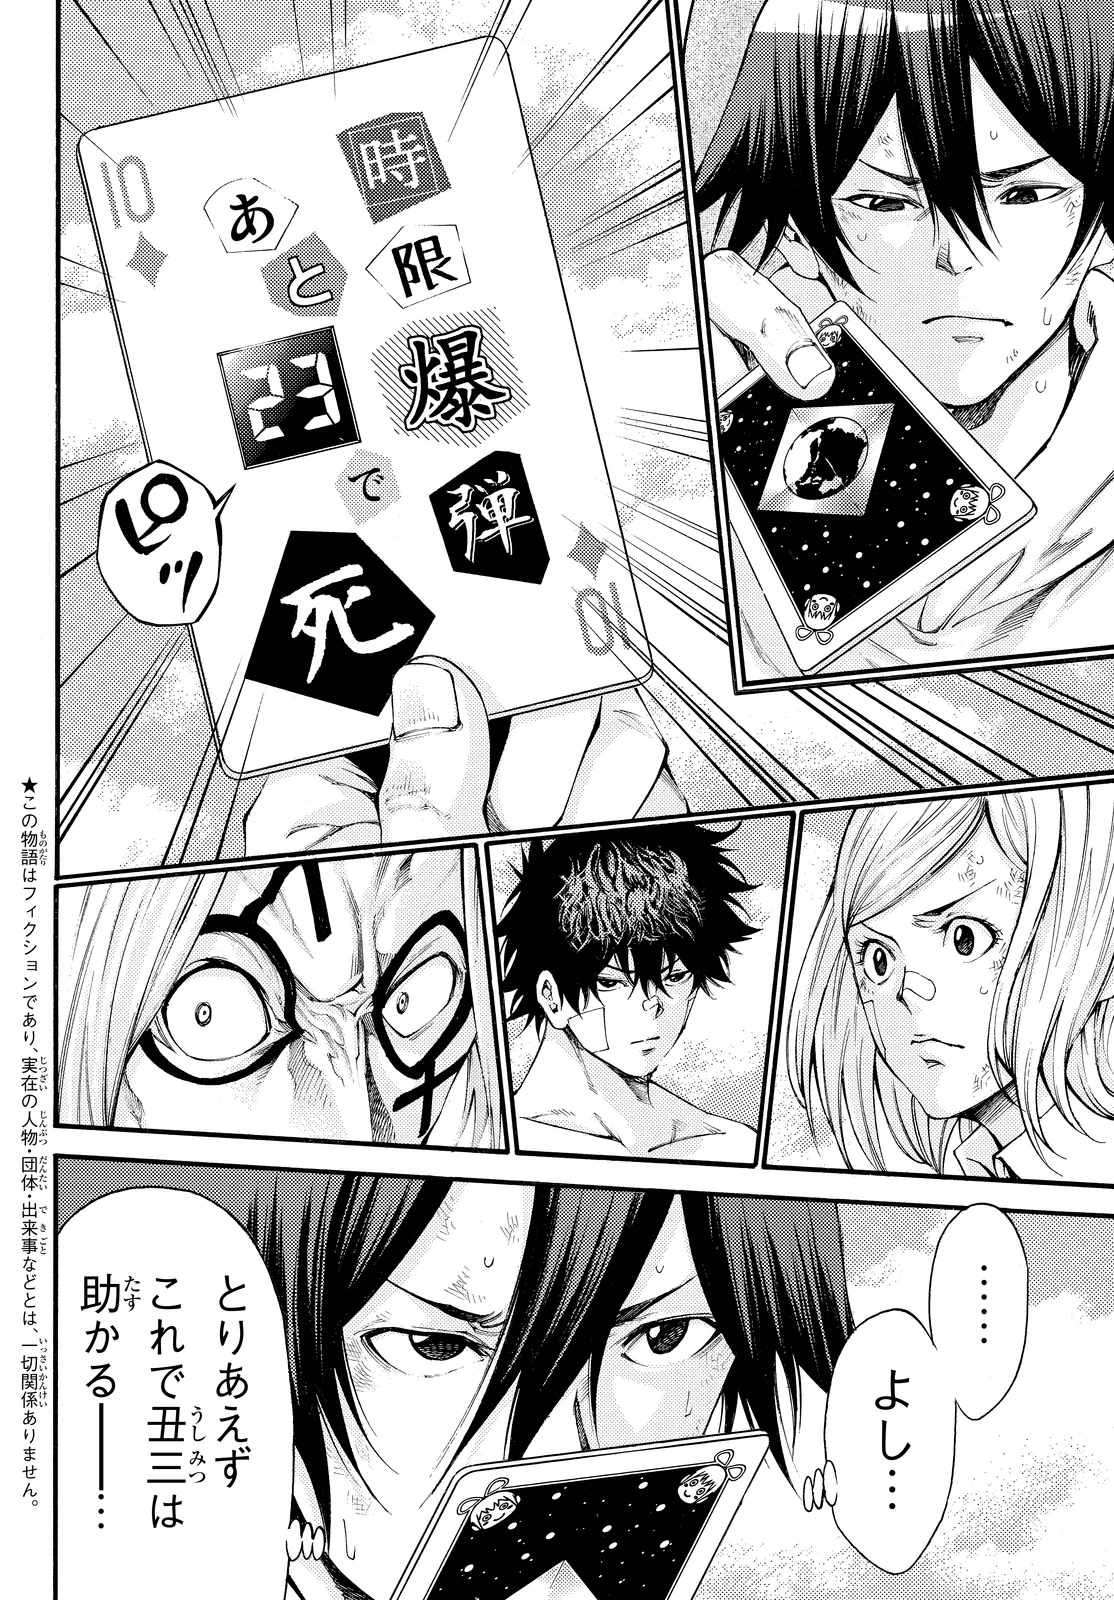 Kamisama_no_Ituori - Chapter 159 - Page 2